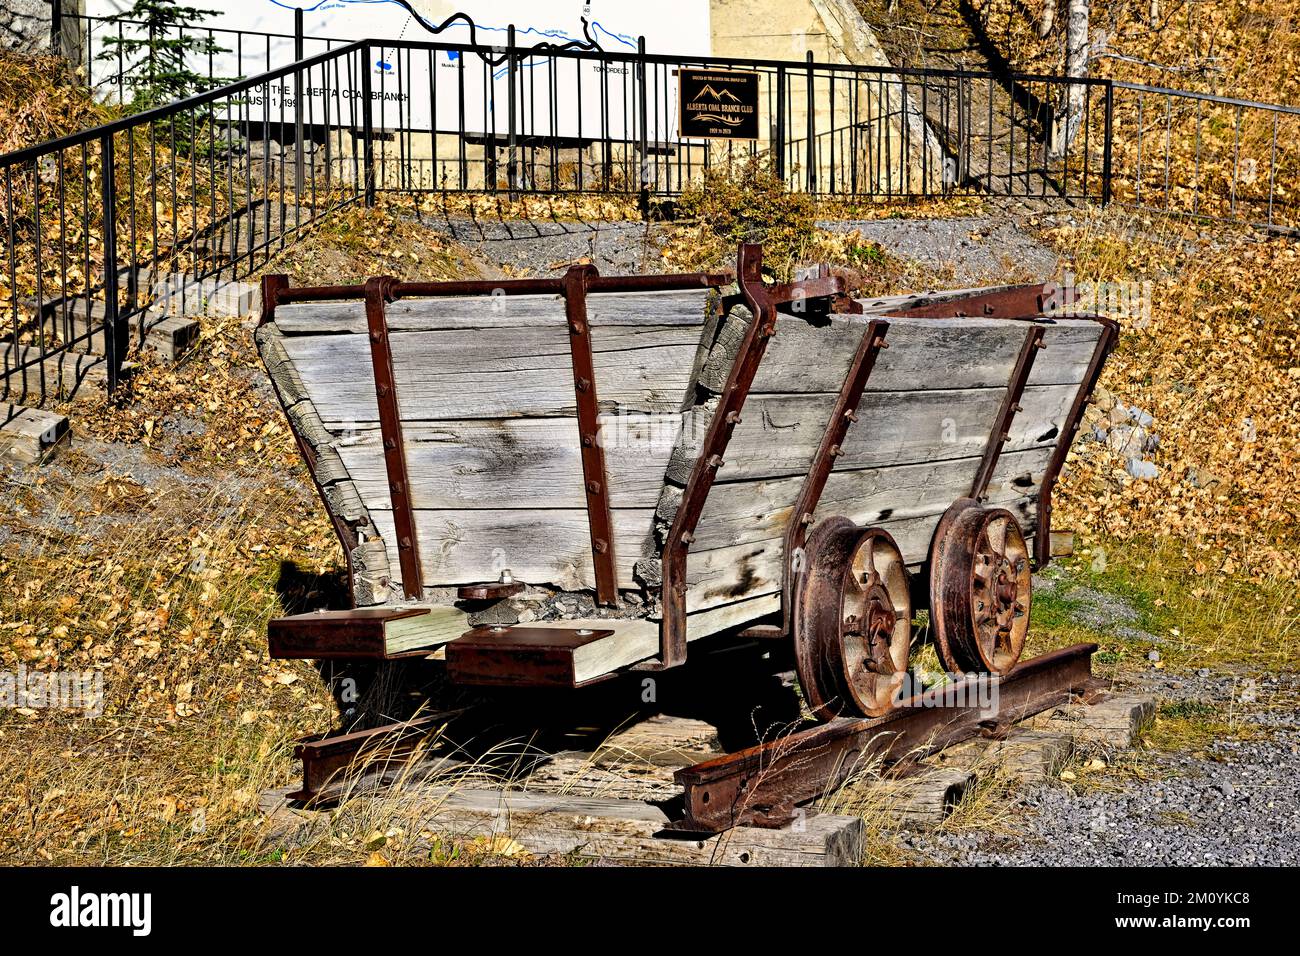 Une charrette minière en bois de l'aera de 1920 garée devant un monument commémoratif à l'industrie minière du charbon dans les régions rurales de l'Alberta au Canada. Banque D'Images